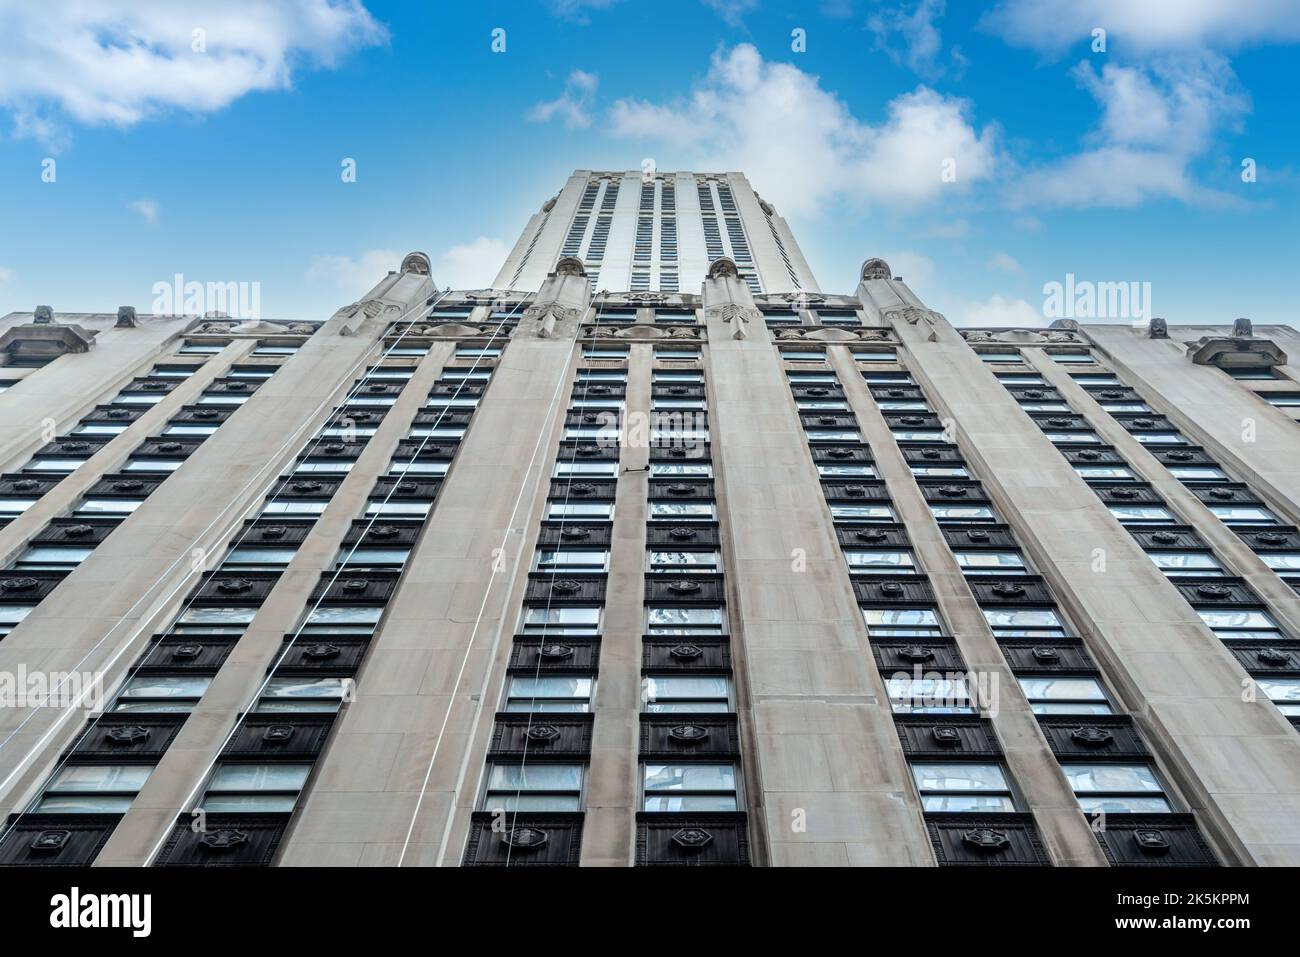 Si innalza la facciata di un grattacielo in stile classico con bassorilievi Foto Stock